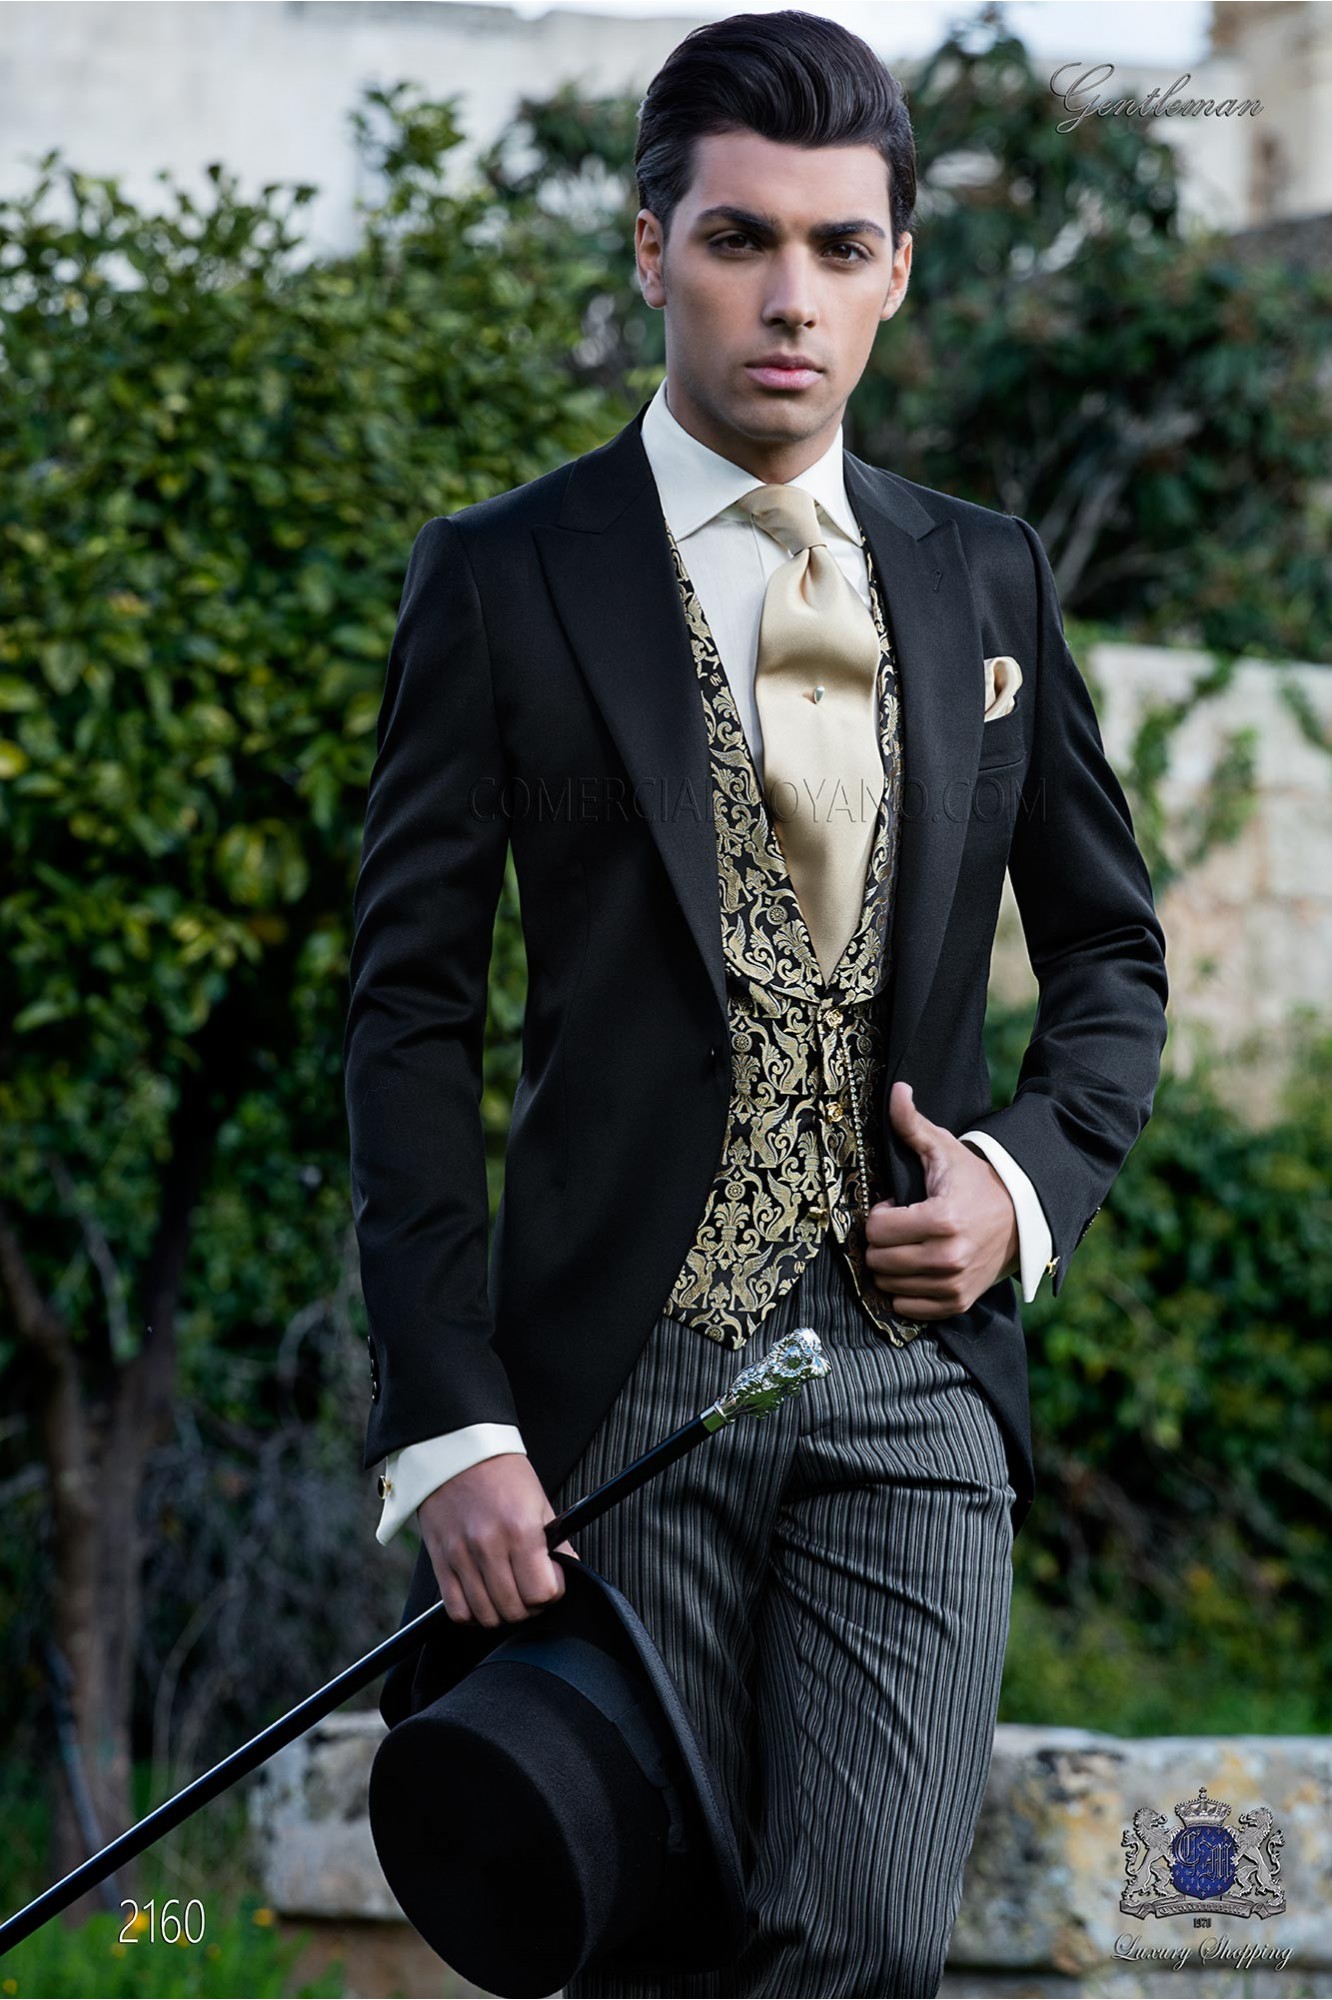 Chaqué clásico negro con pantalón de etiqueta modelo: 2160 Mario Moyano colección Gentleman